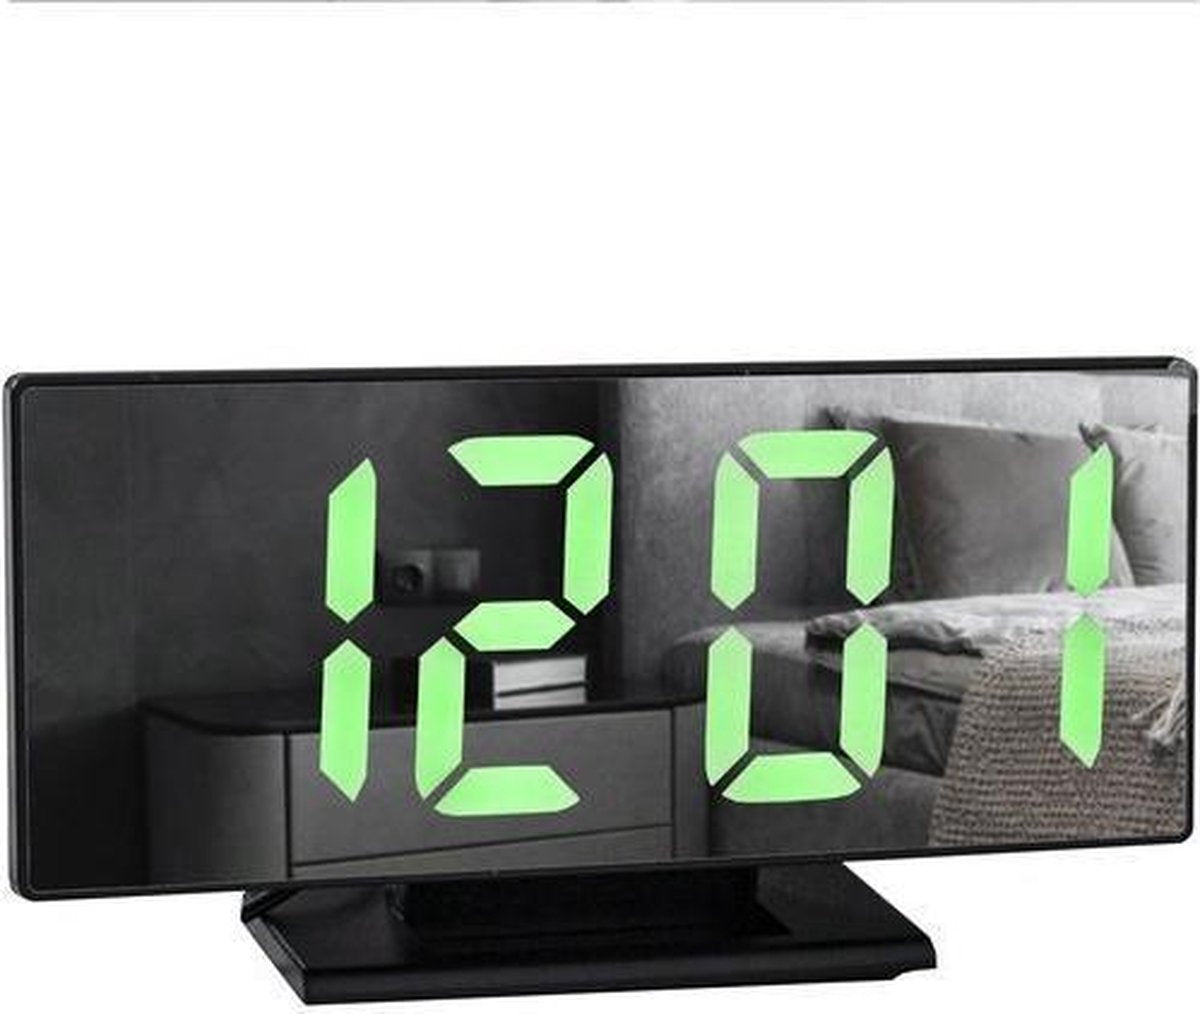 Multifunctionele Digitale Wekker - Spiegel Klok met Wekker en Thermometer - 4 in 1 - Zwart